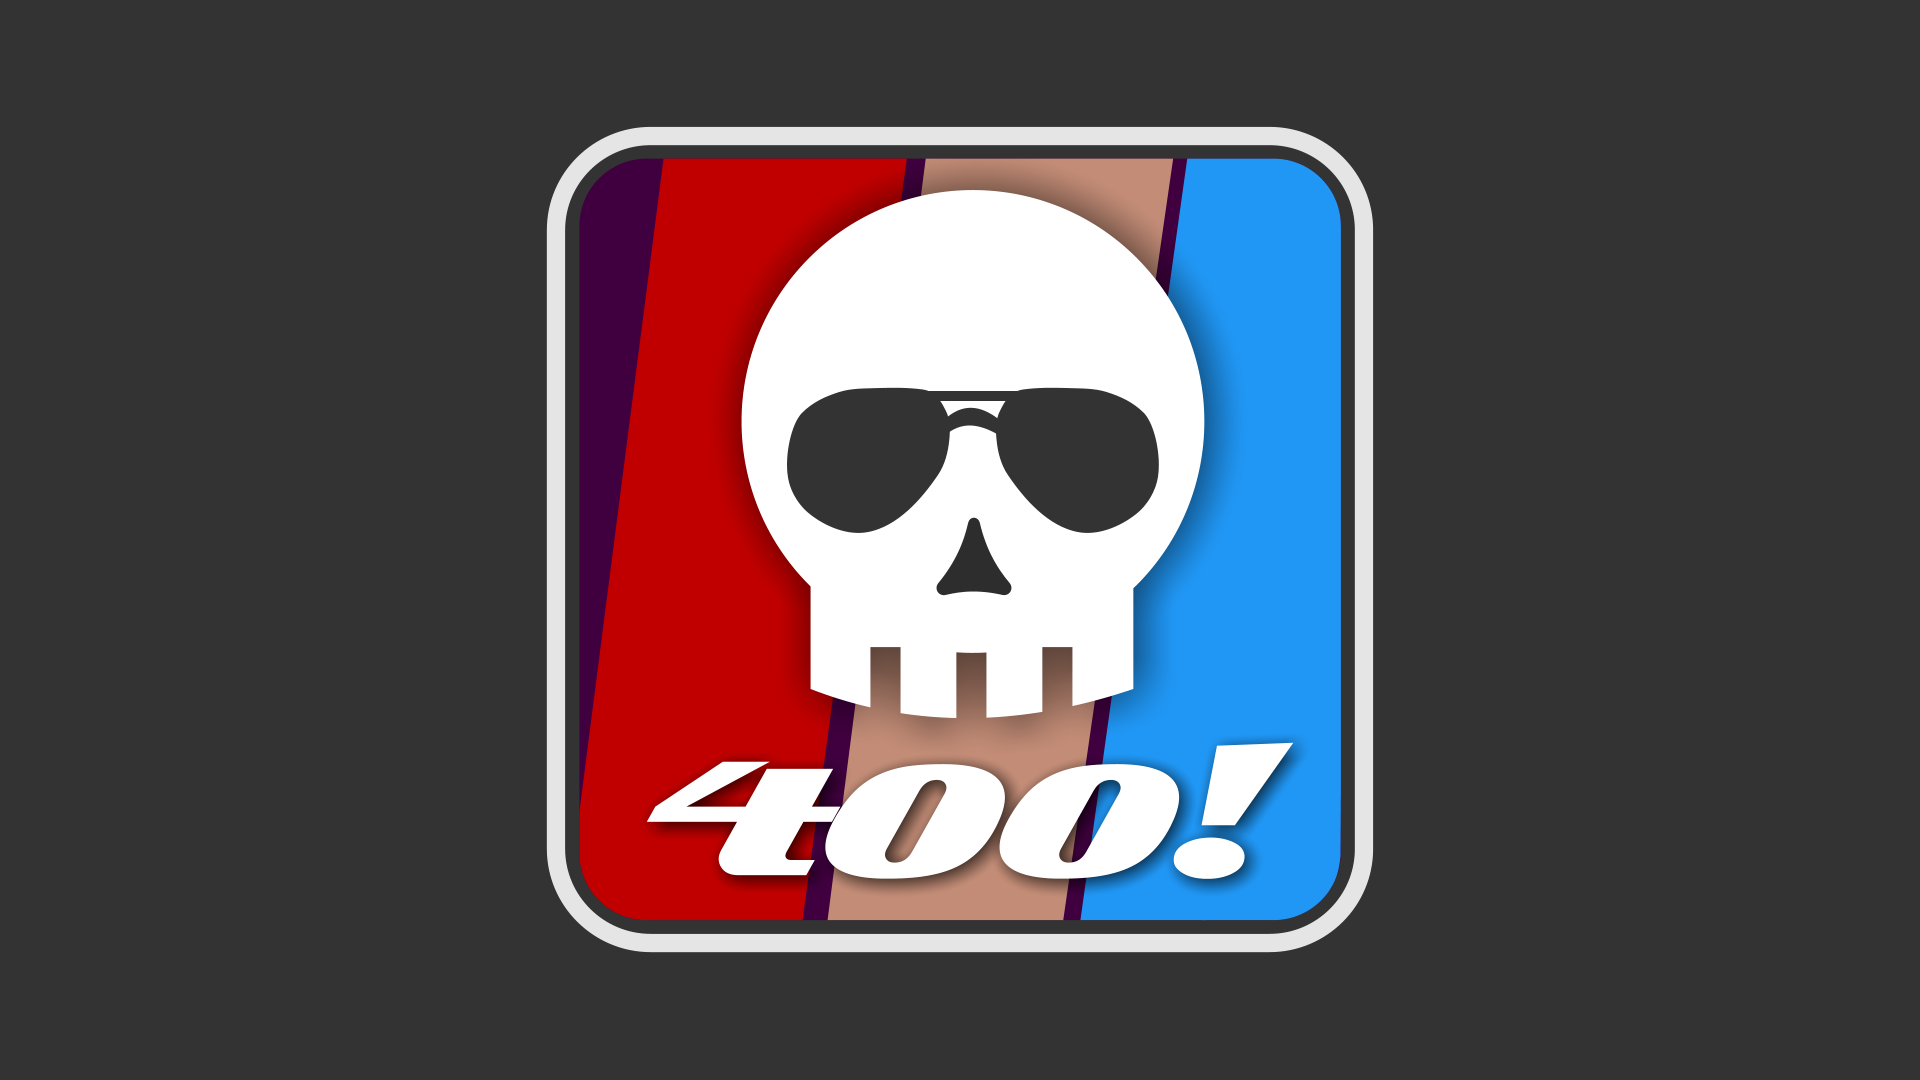 400 Kills